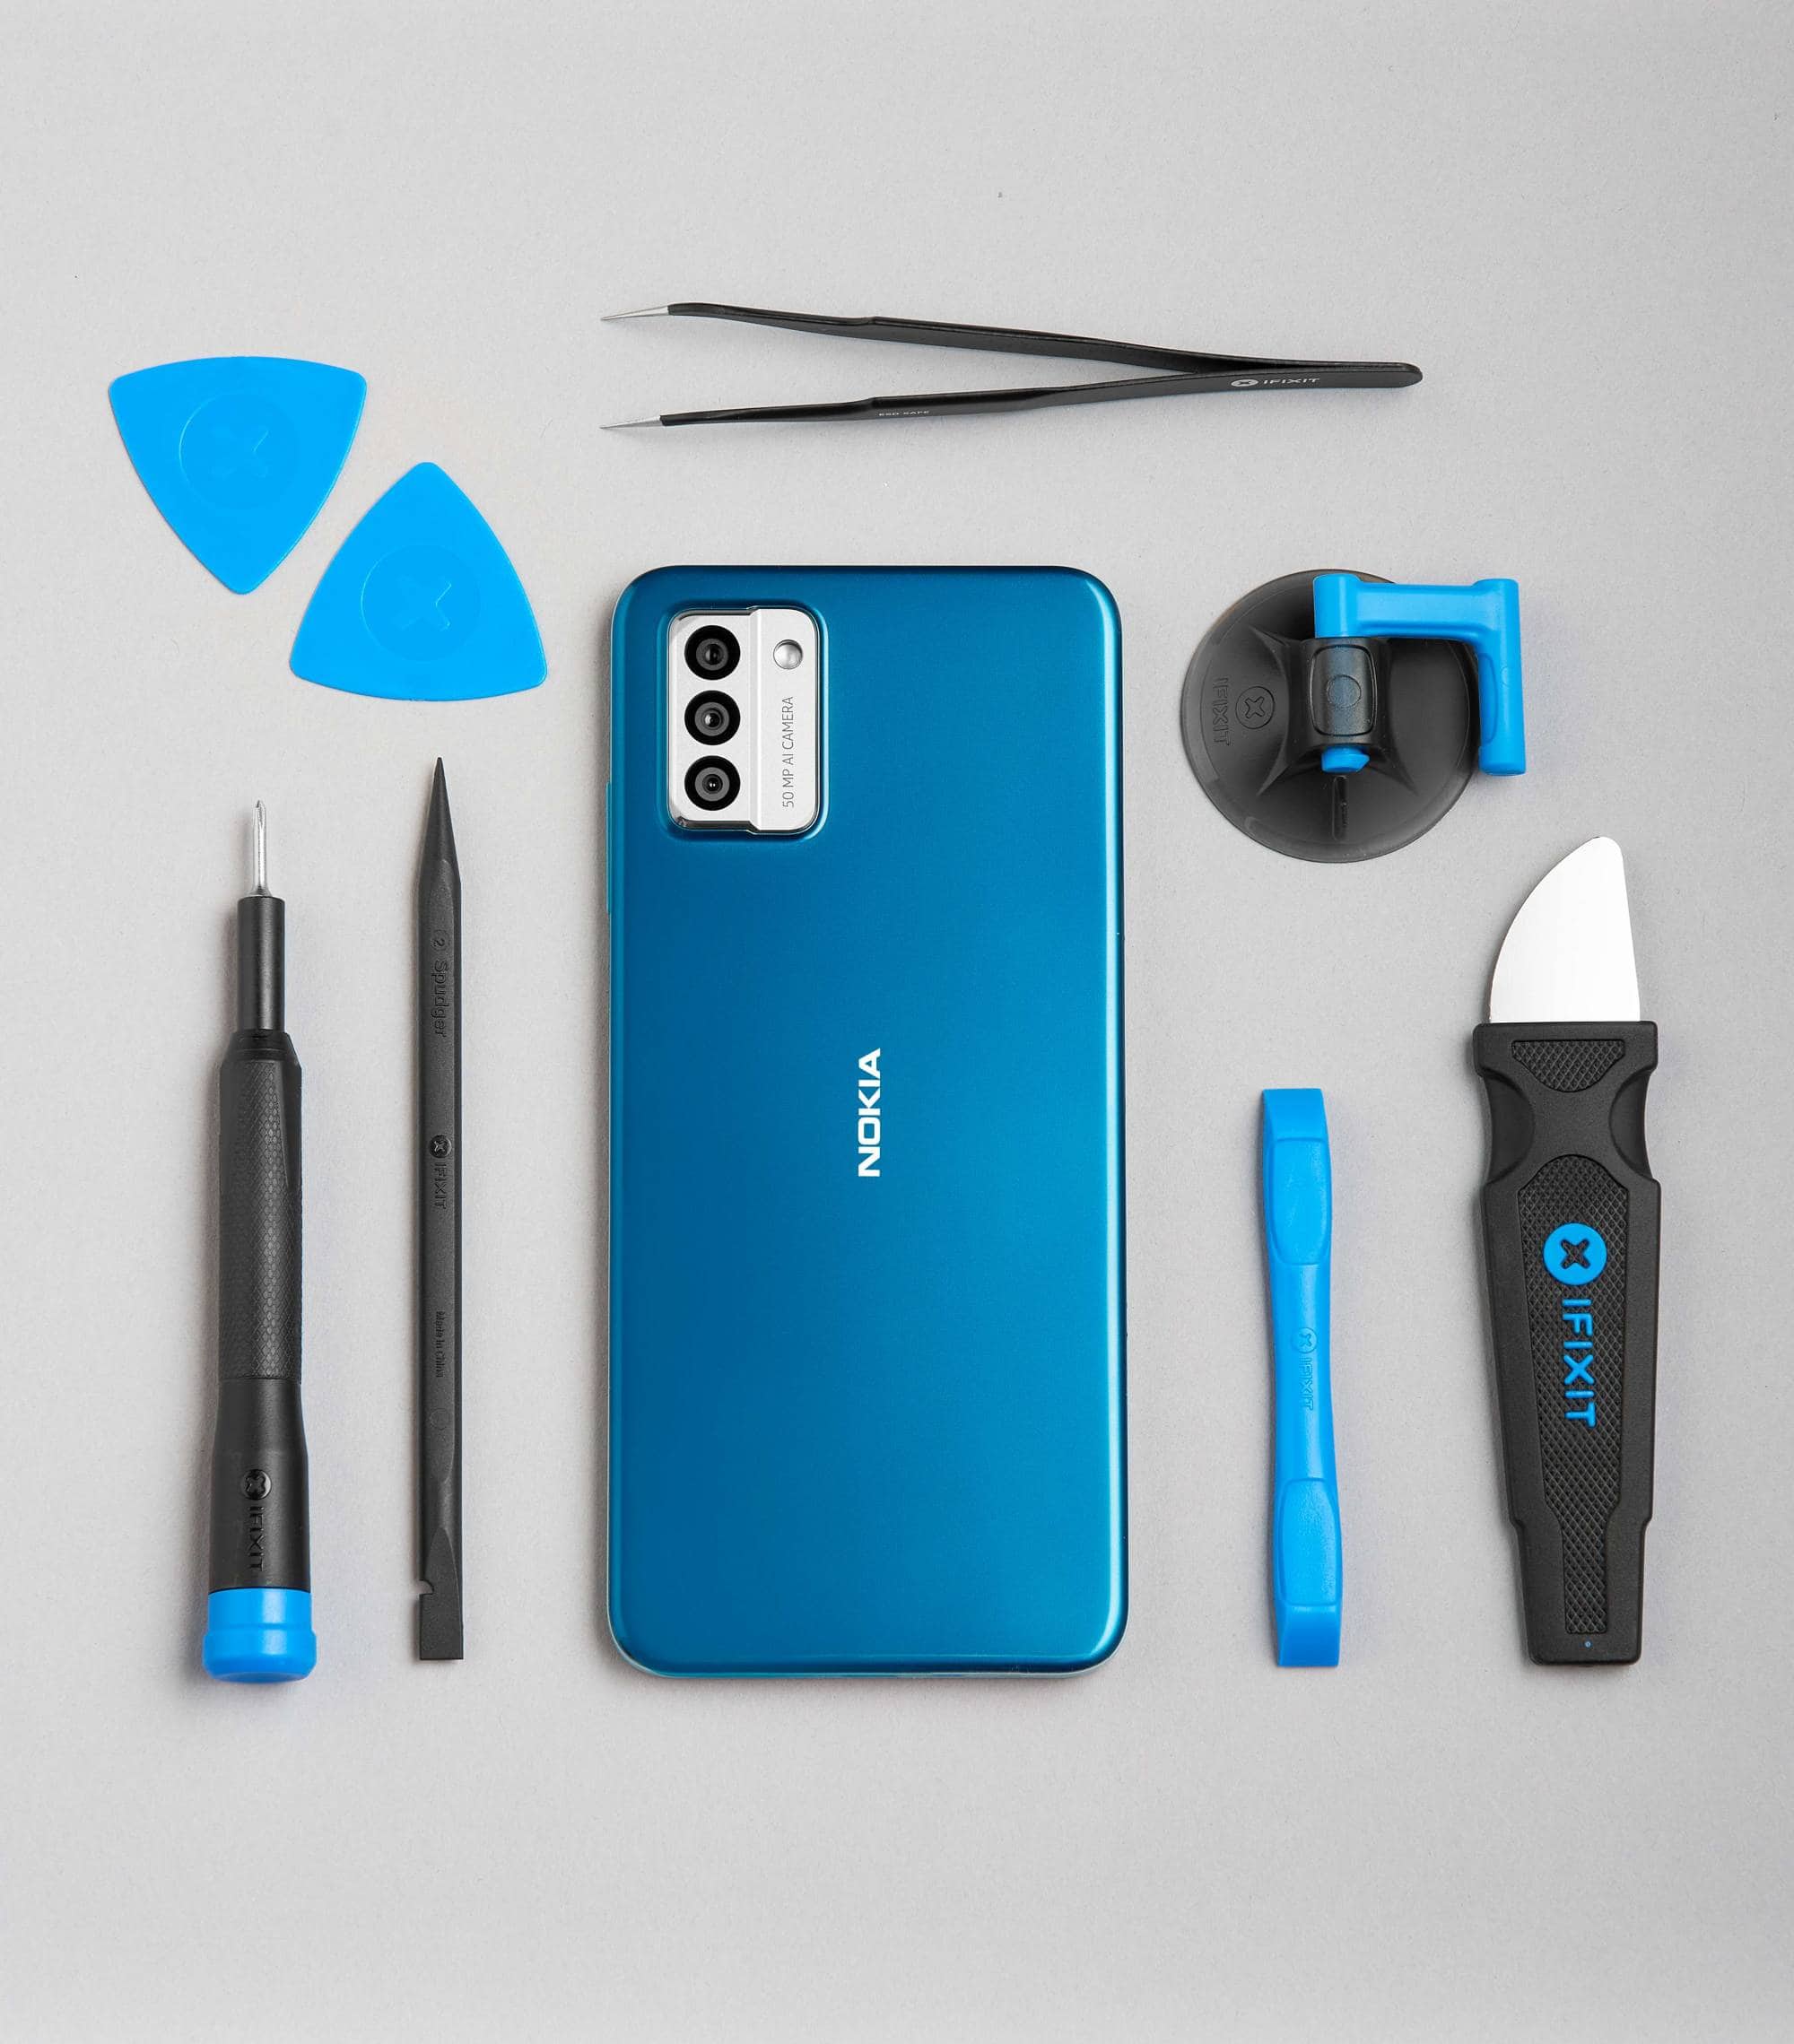 Nokia G22 chính thức giới thiệu tập trung vào khả năng dễ sửa chữa và tính bền vững